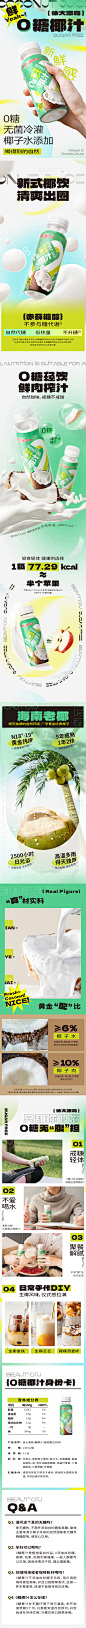 南国徐大漂亮零0糖海南鲜椰子汁新鲜生榨椰乳植物蛋白奶饮料3瓶